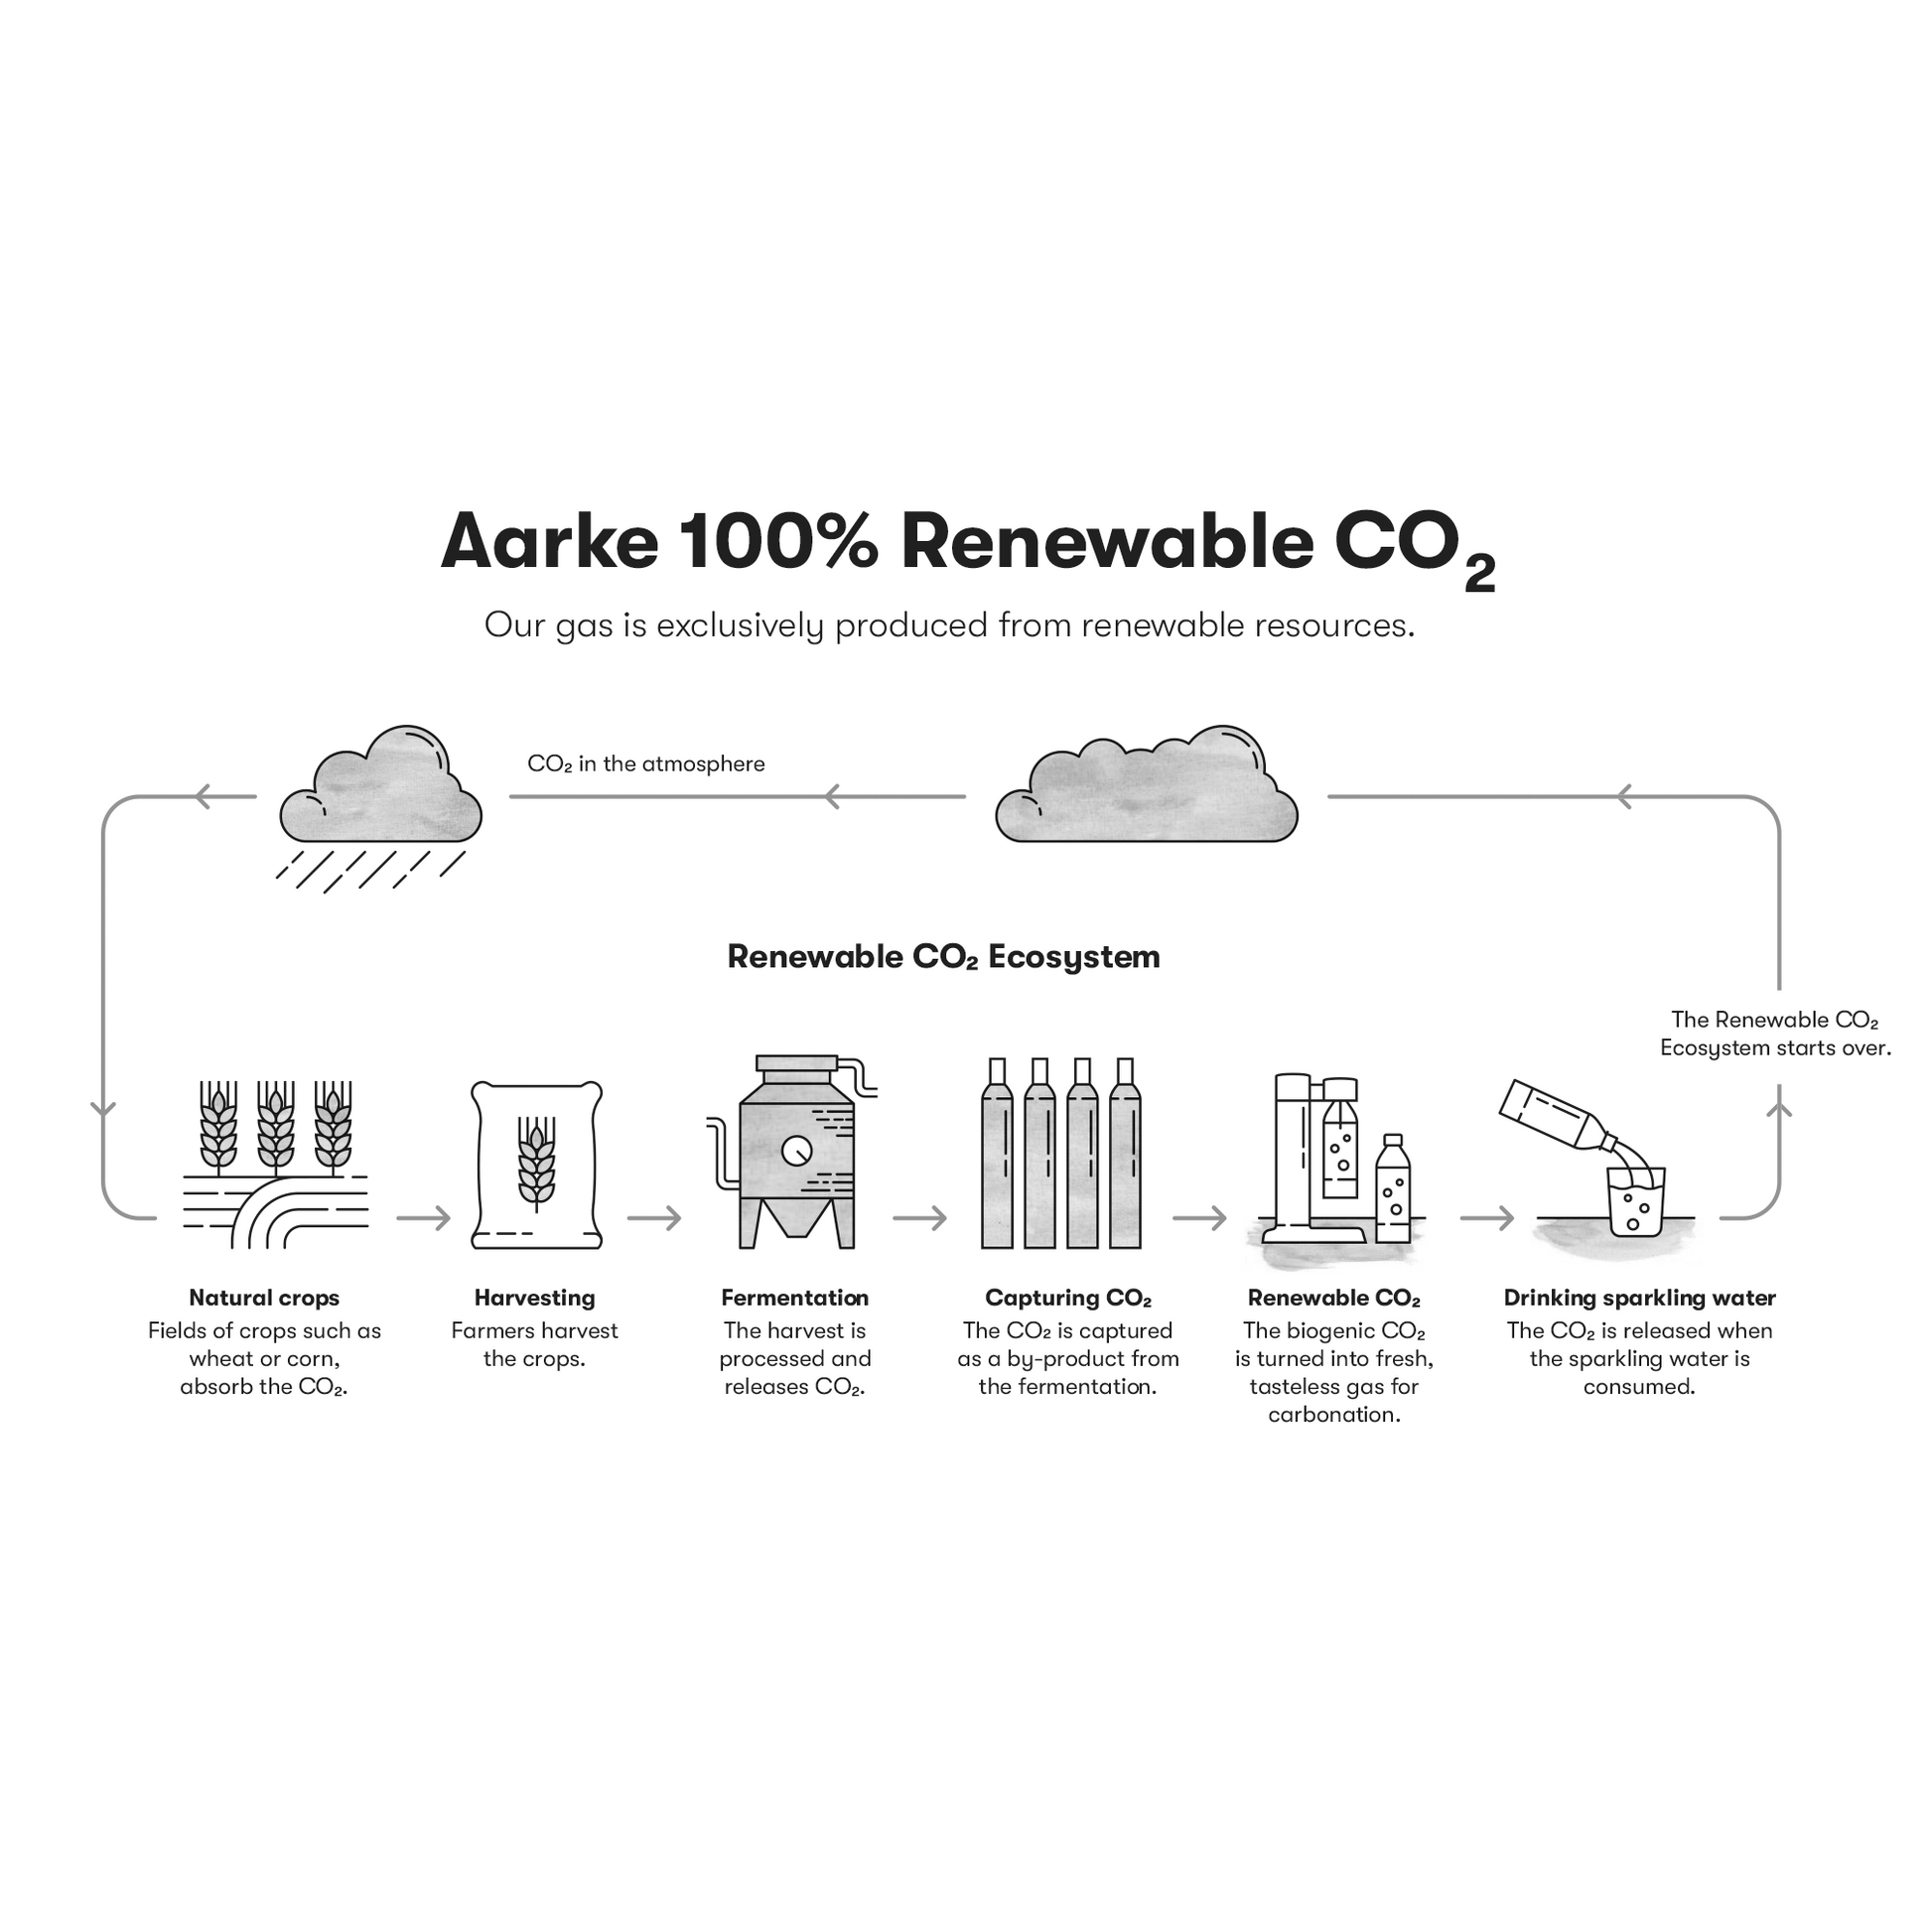 Aarke 100% Renewable CO2